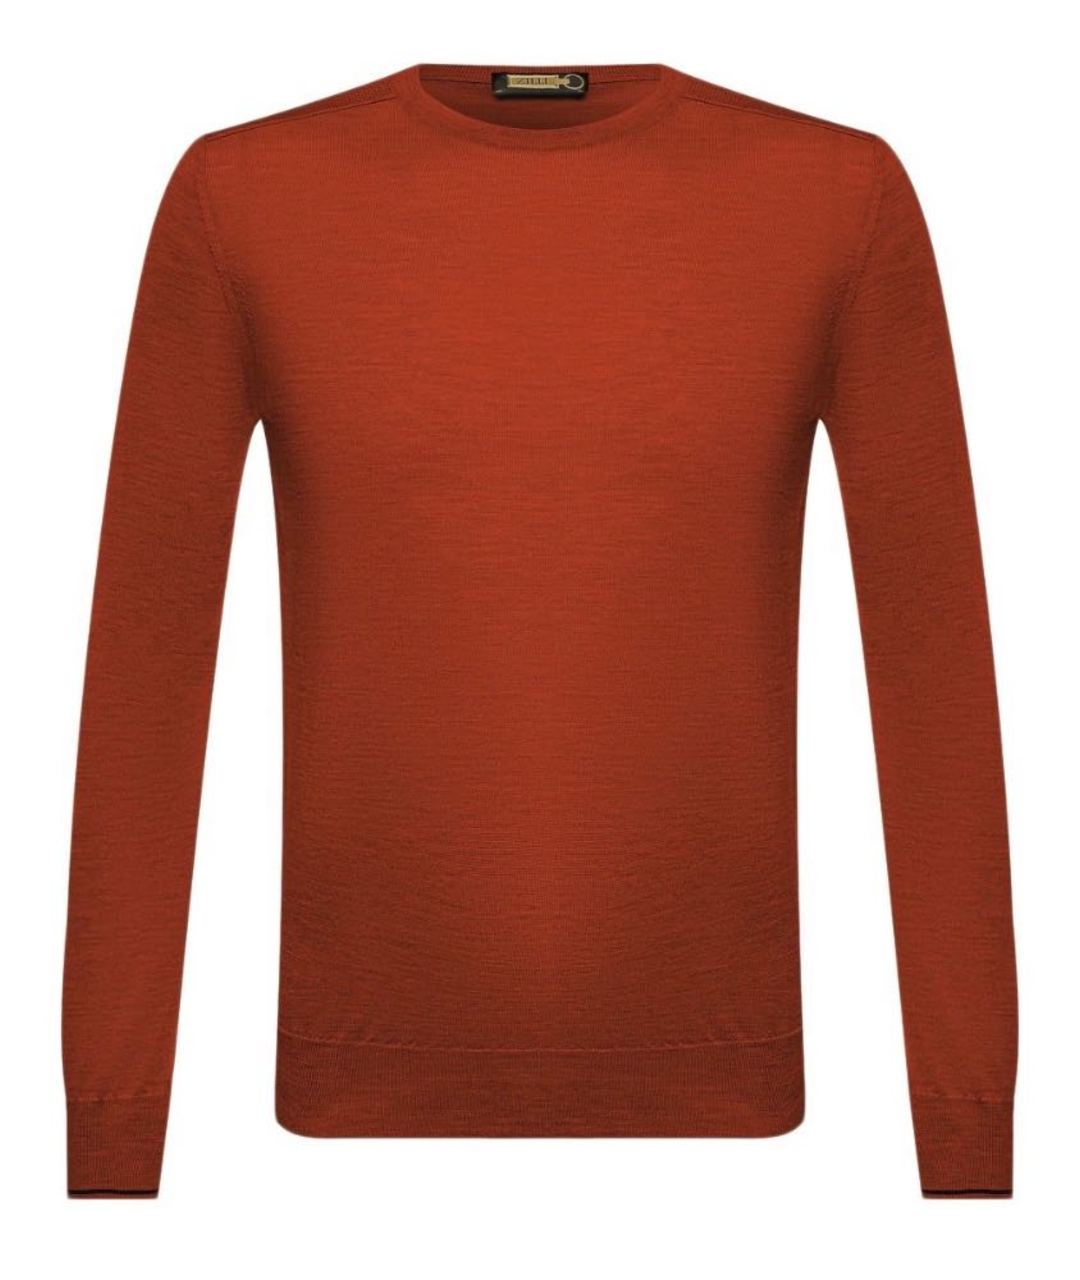 ZILLI Оранжевый кашемировый джемпер / свитер, фото 1